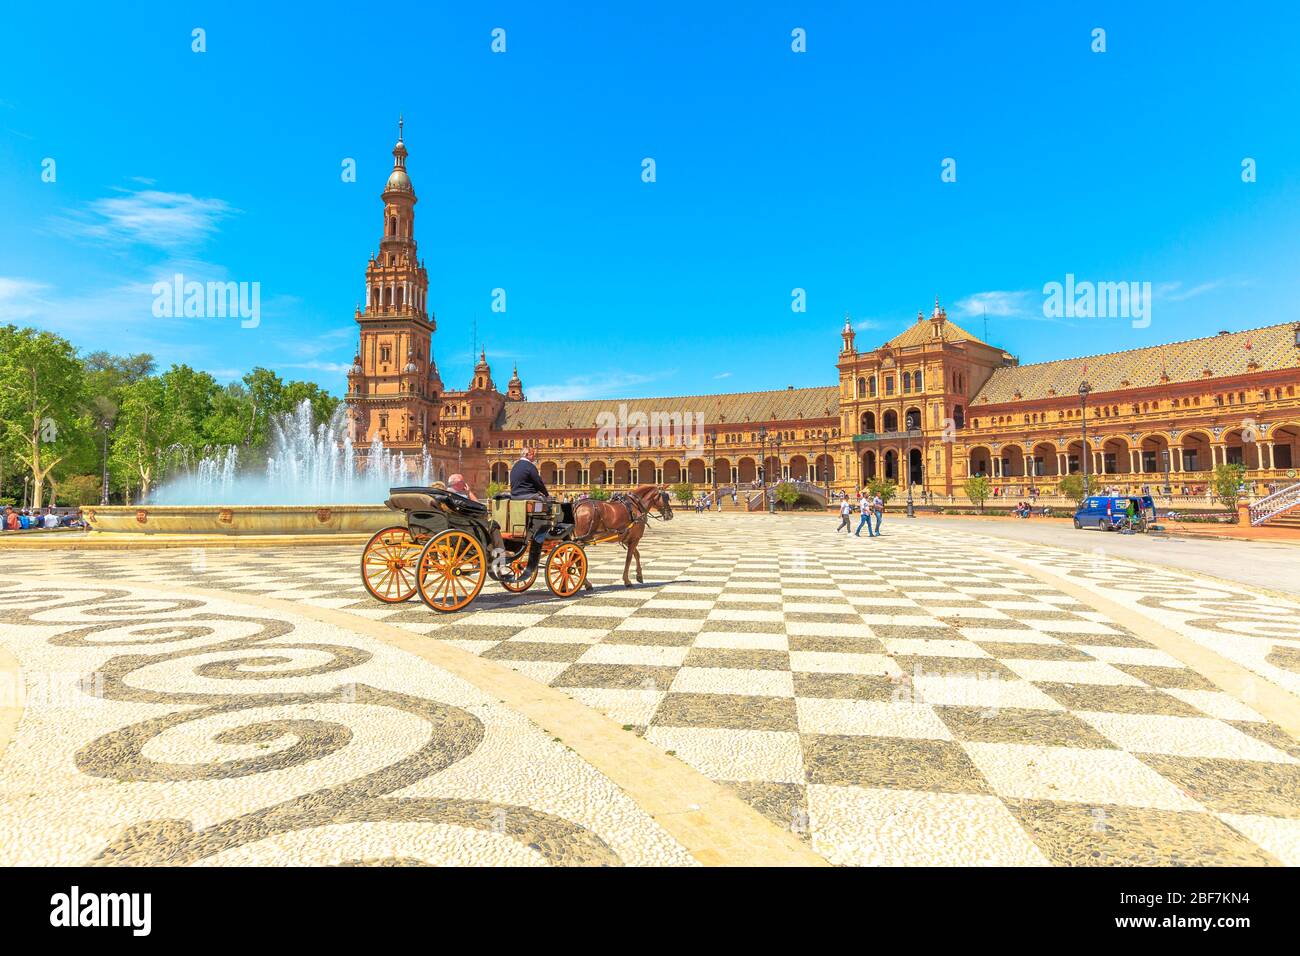 Siviglia, Andalusia, Spagna - 18 aprile 2016: Giro in carrozza a cavallo in Plaza de Espana con torre nord, edificio con colonne e archi e centrale Foto Stock